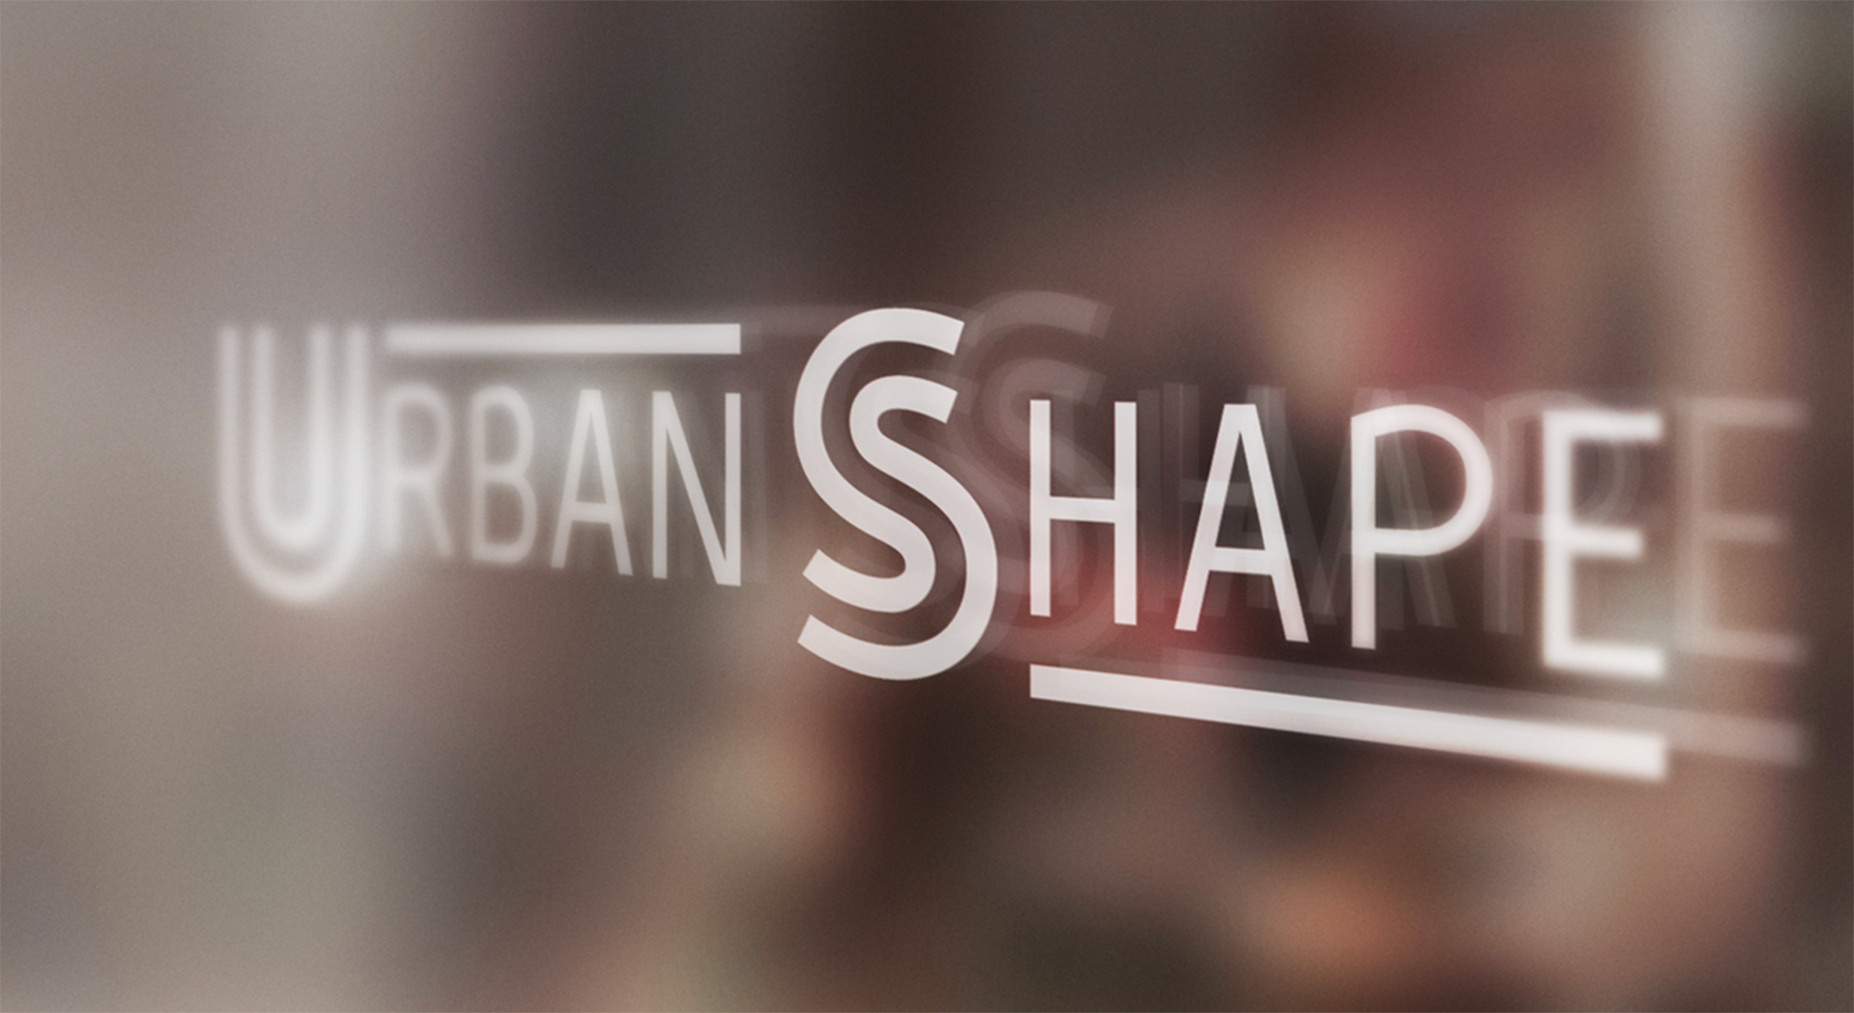 urban shape logo